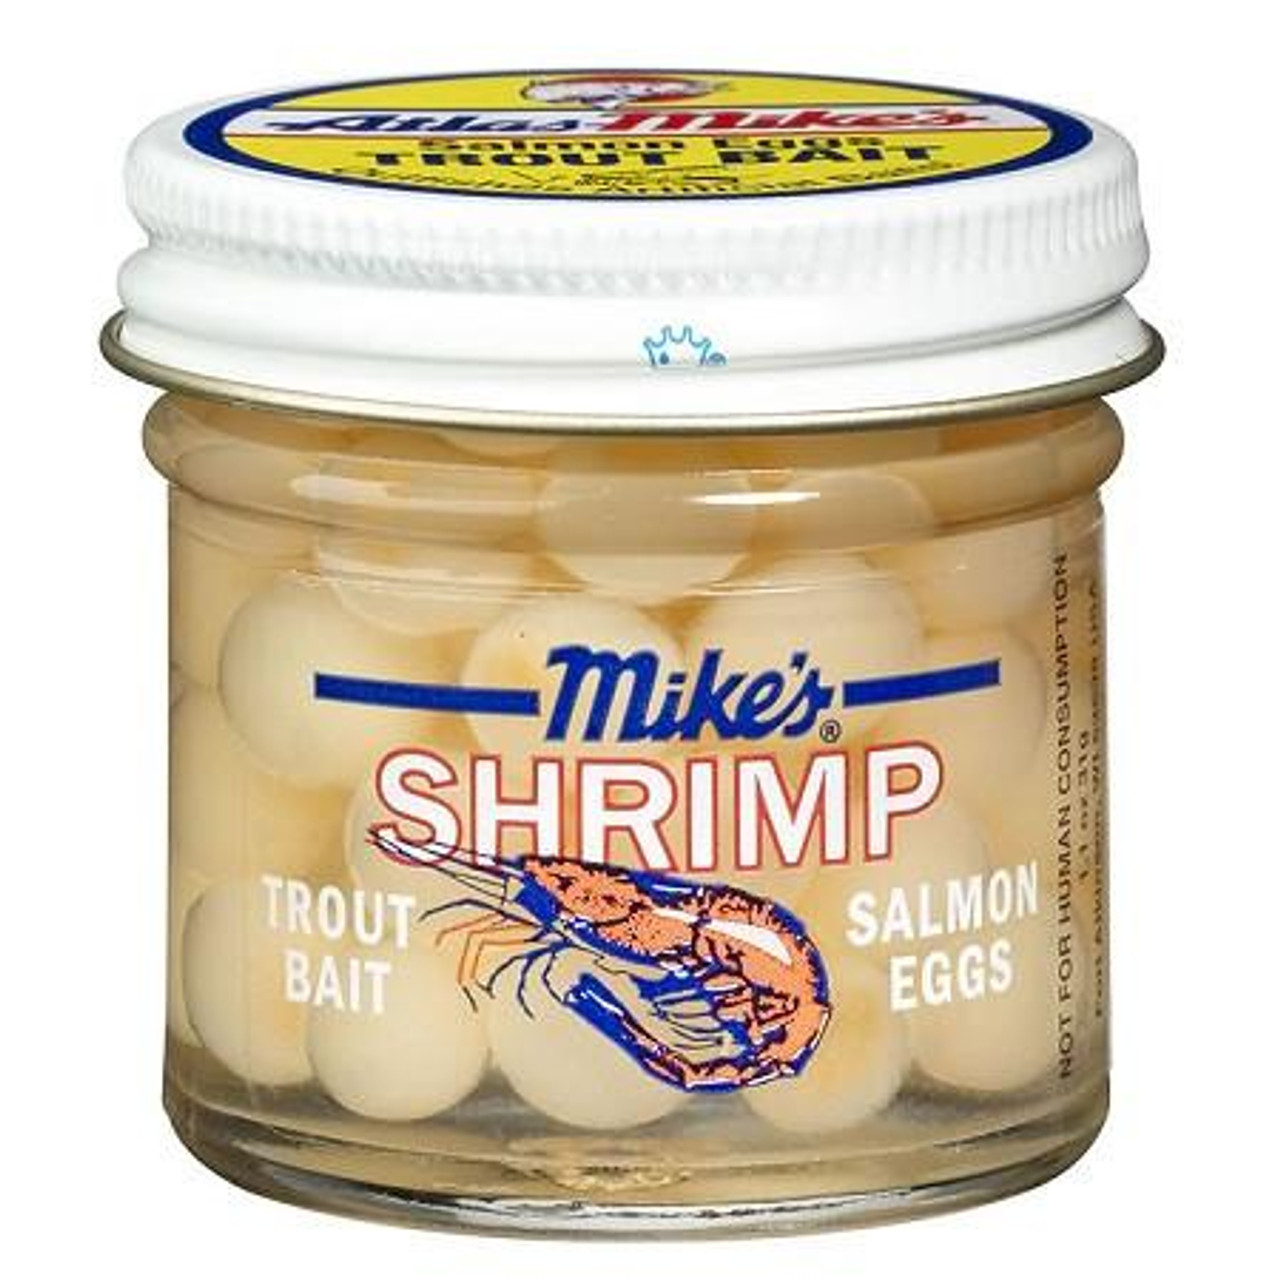 Mike's Shrimp Salmon Eggs White Trout Bait